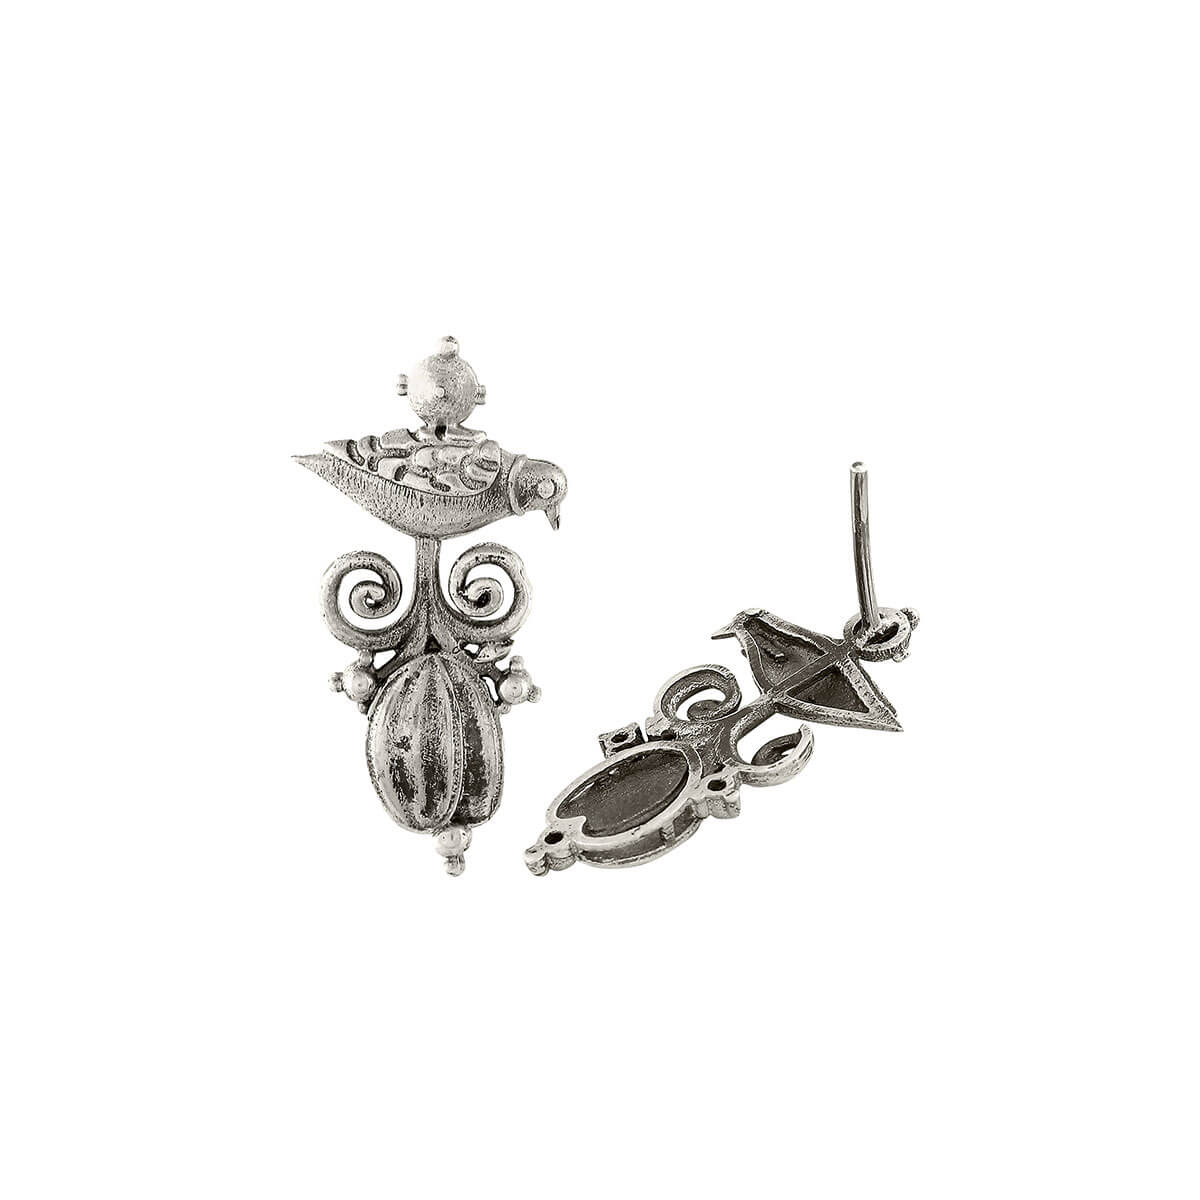 Parrot Silver Earrings - mohabygeetanjali